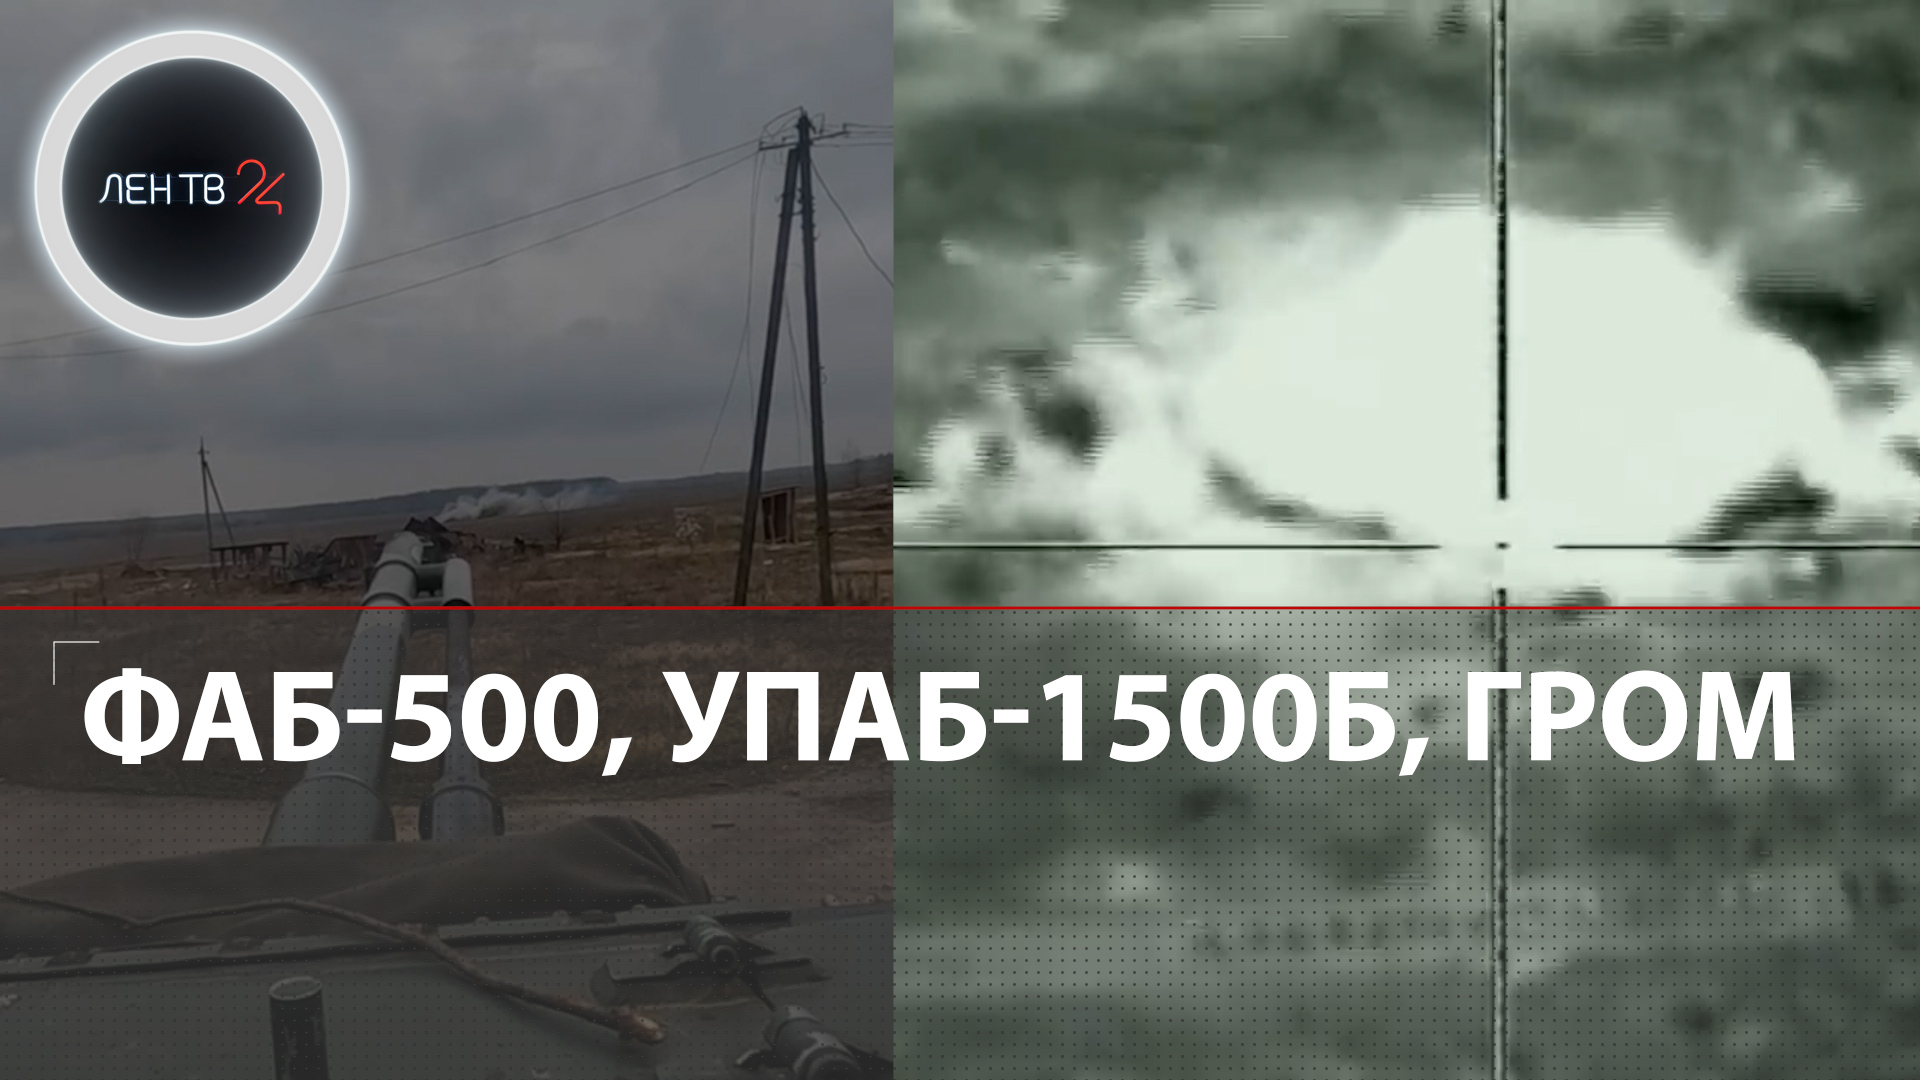 Авиабомбы ФАБ-500, УПАБ-1500Б найдены на Украине | Ответ ВКС России на американские JDAM |Видео